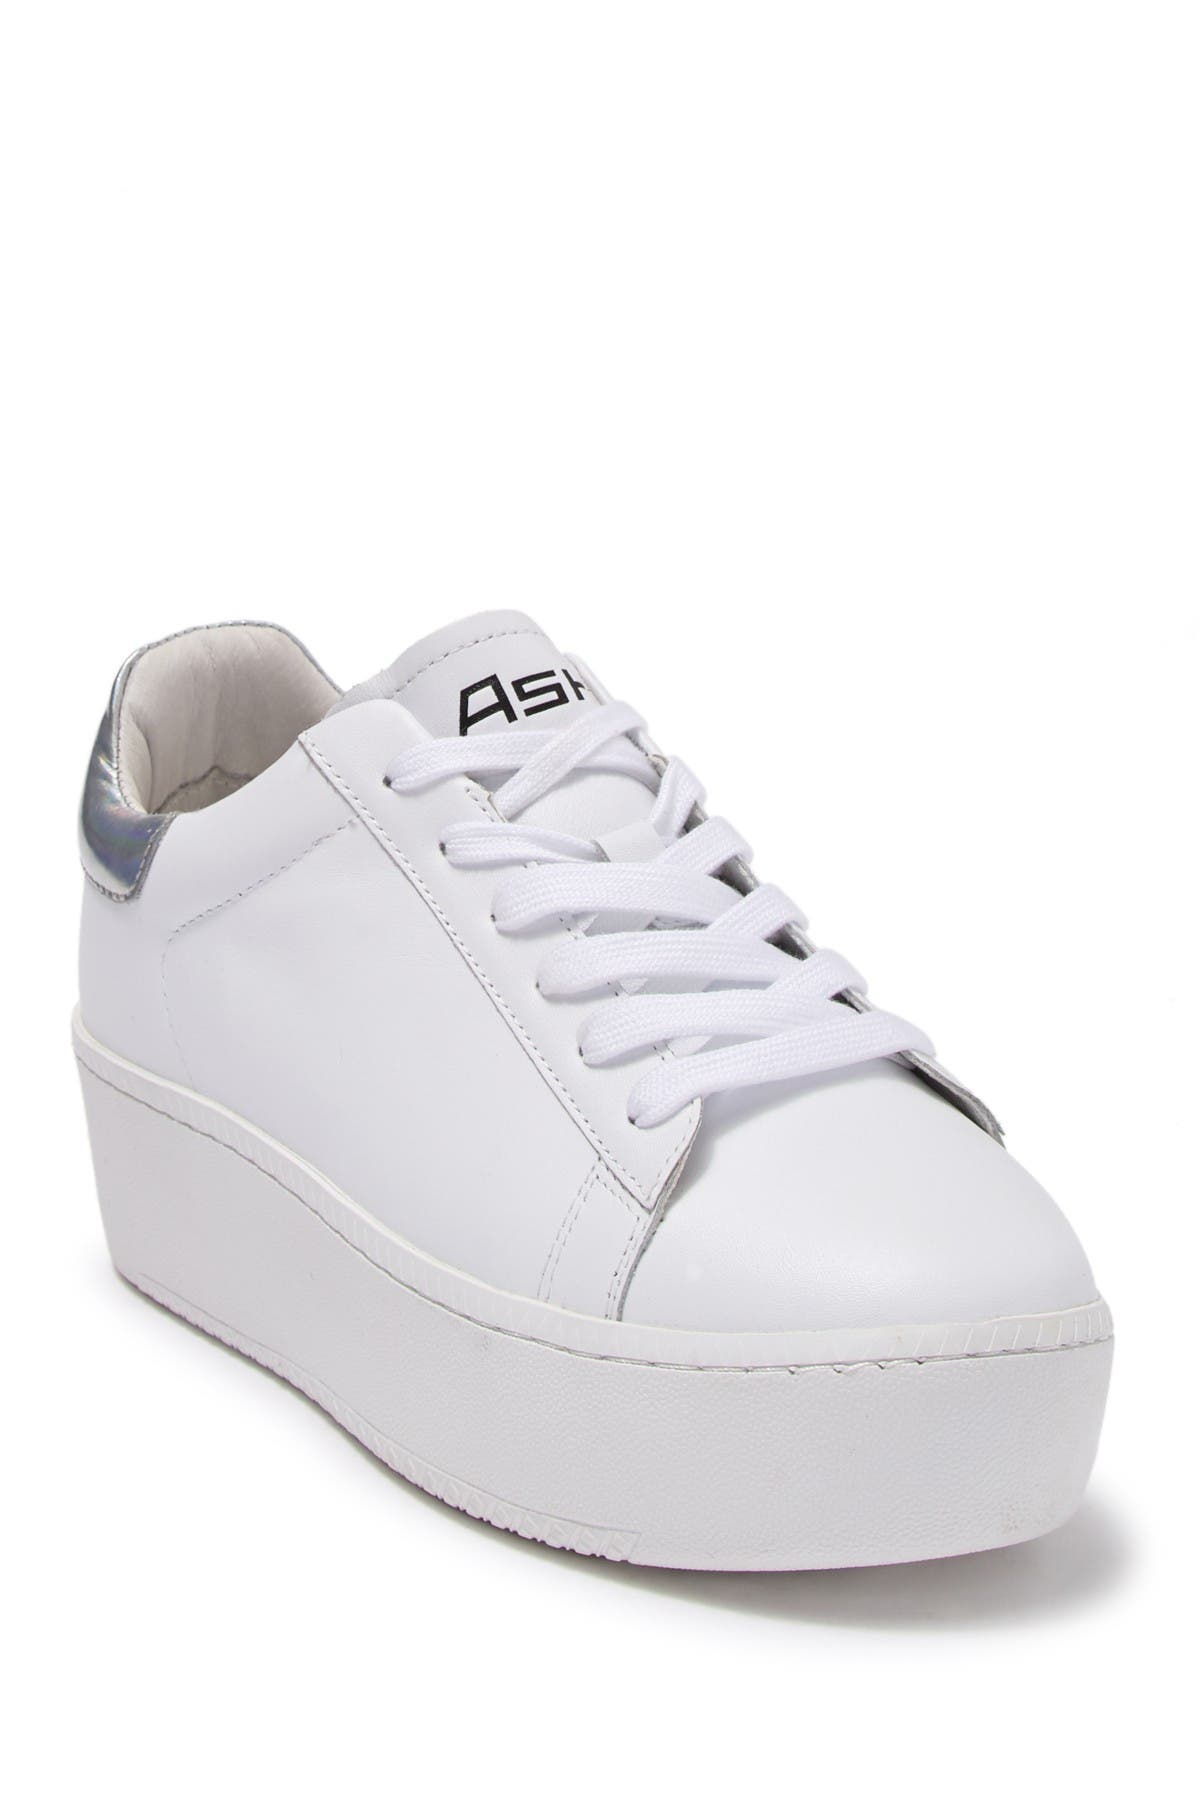 ash cult leather platform sneaker